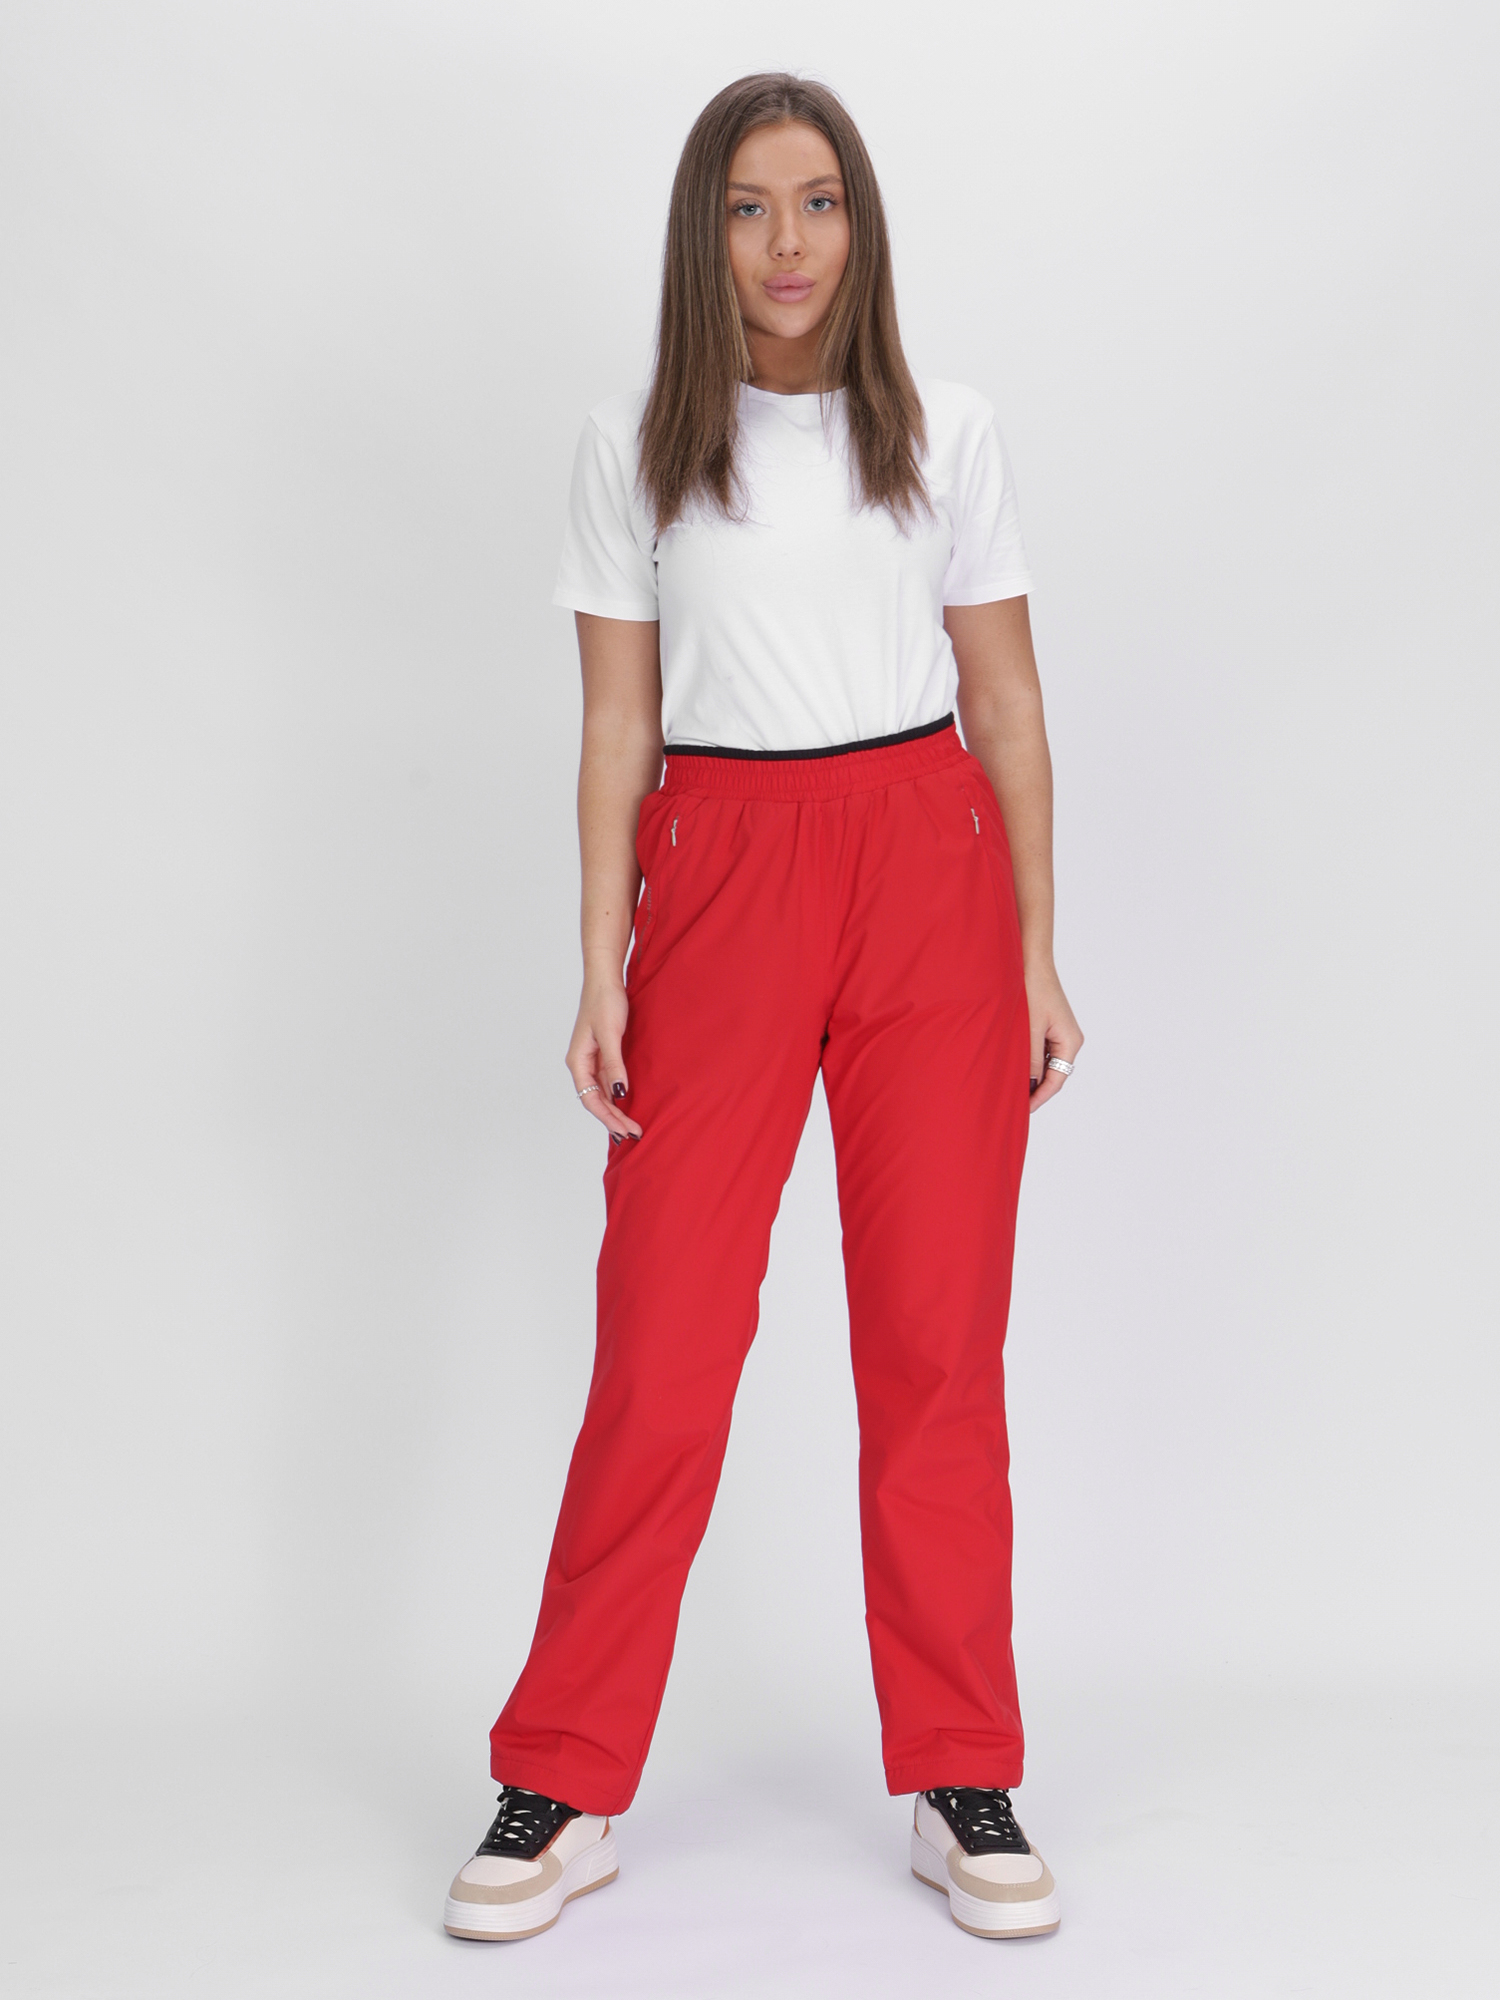 Купить Утепленные спортивные брюки женские красного цвета 88149Kr